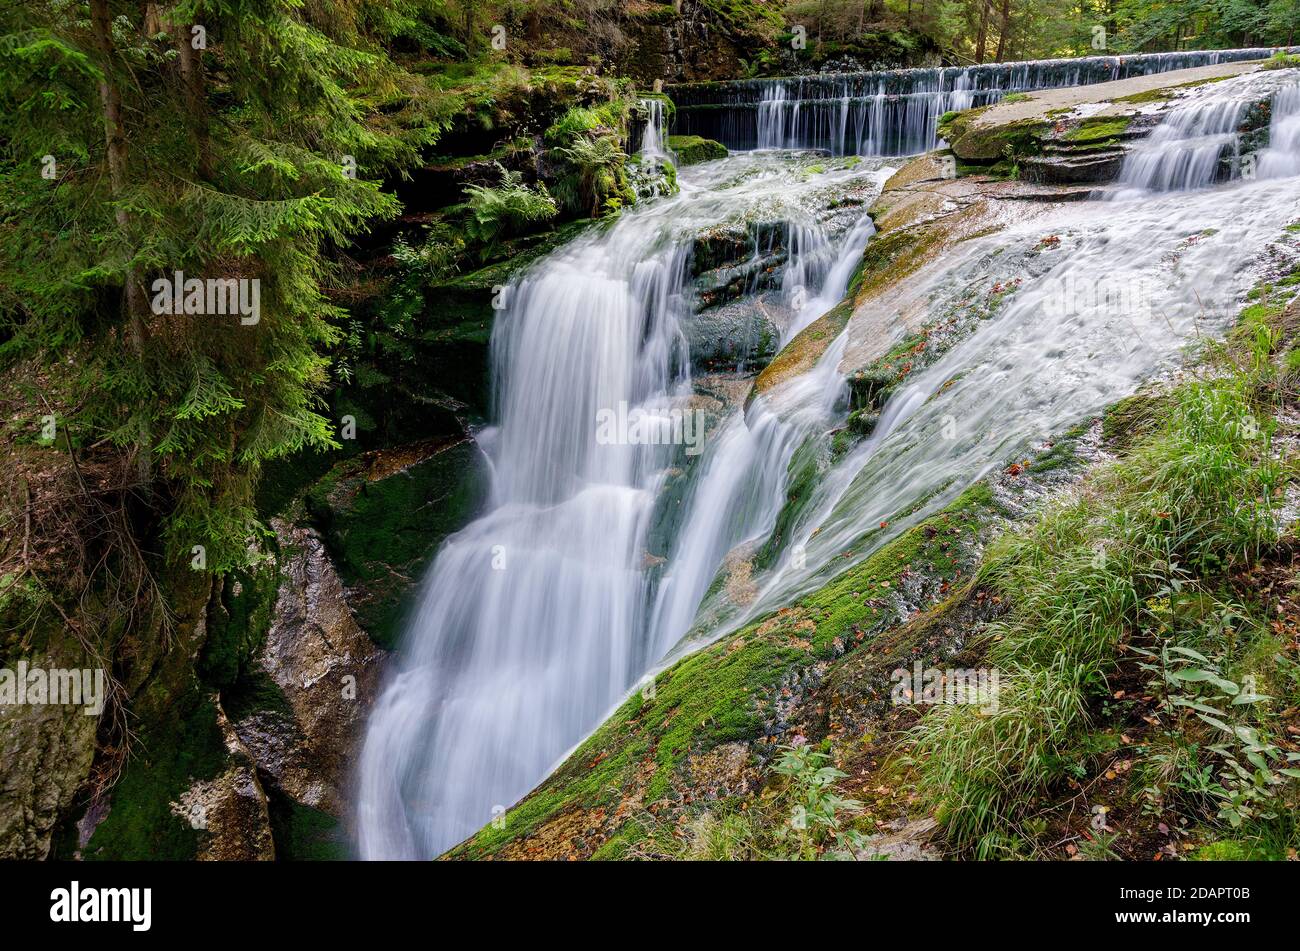 Szklarka Waterfall, Giants Mountains (Karkonosze), Szklarska Poreba, Poland, Lower Silesia province. Stock Photo